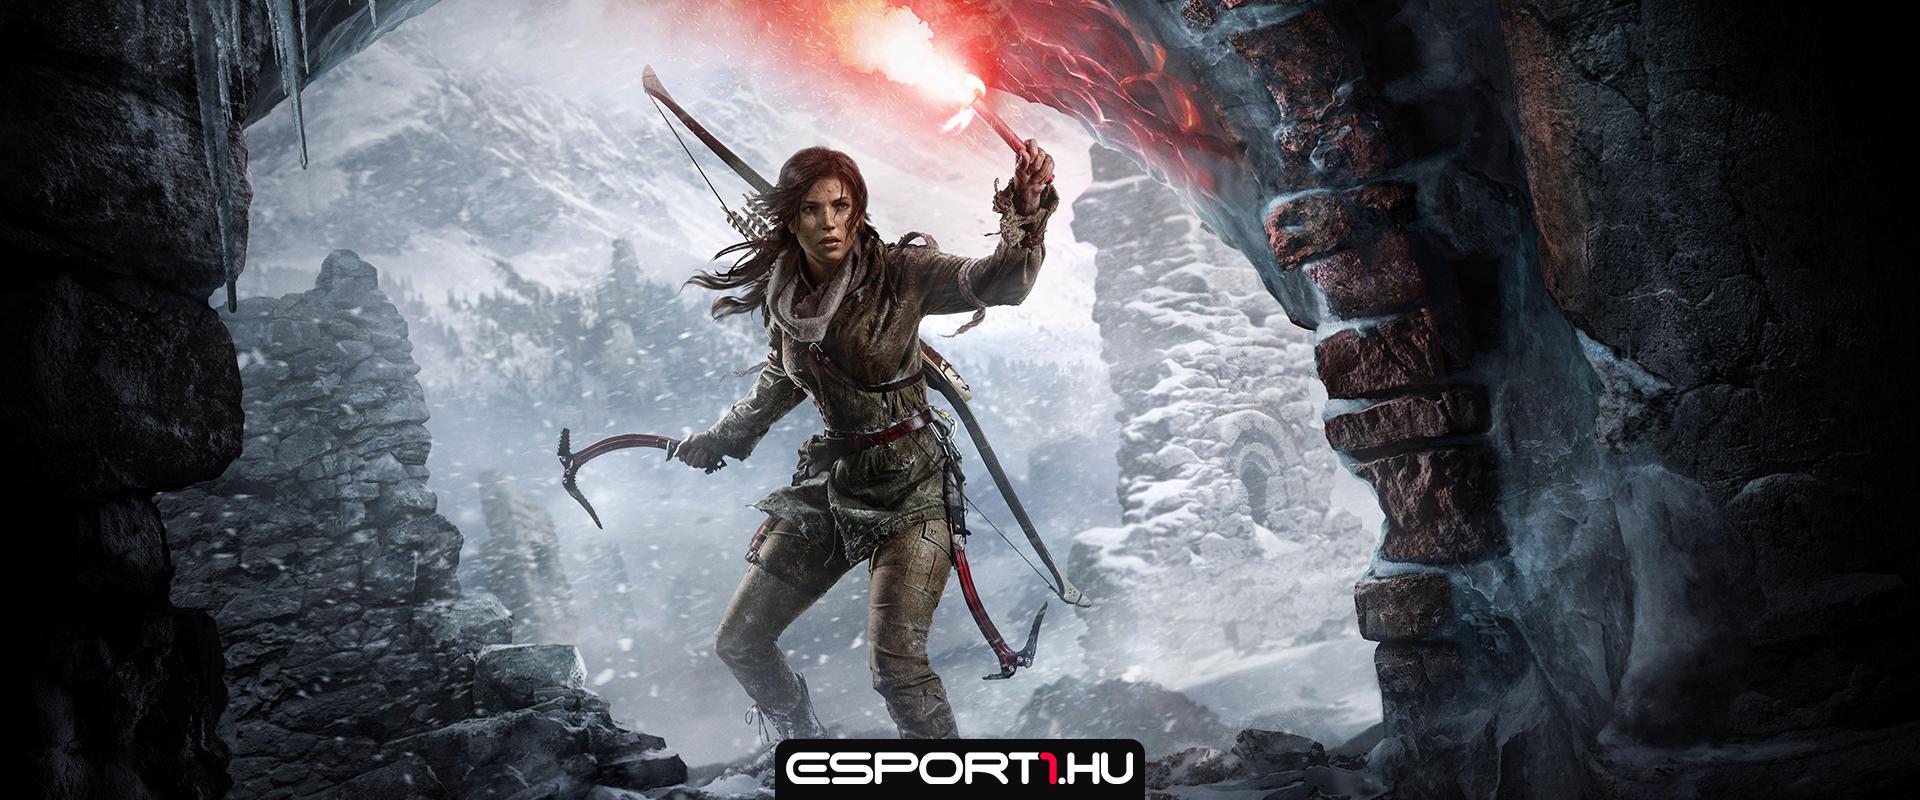 Unreal Engine 5-ben már készül a Tomb Raider-sorozat következő része